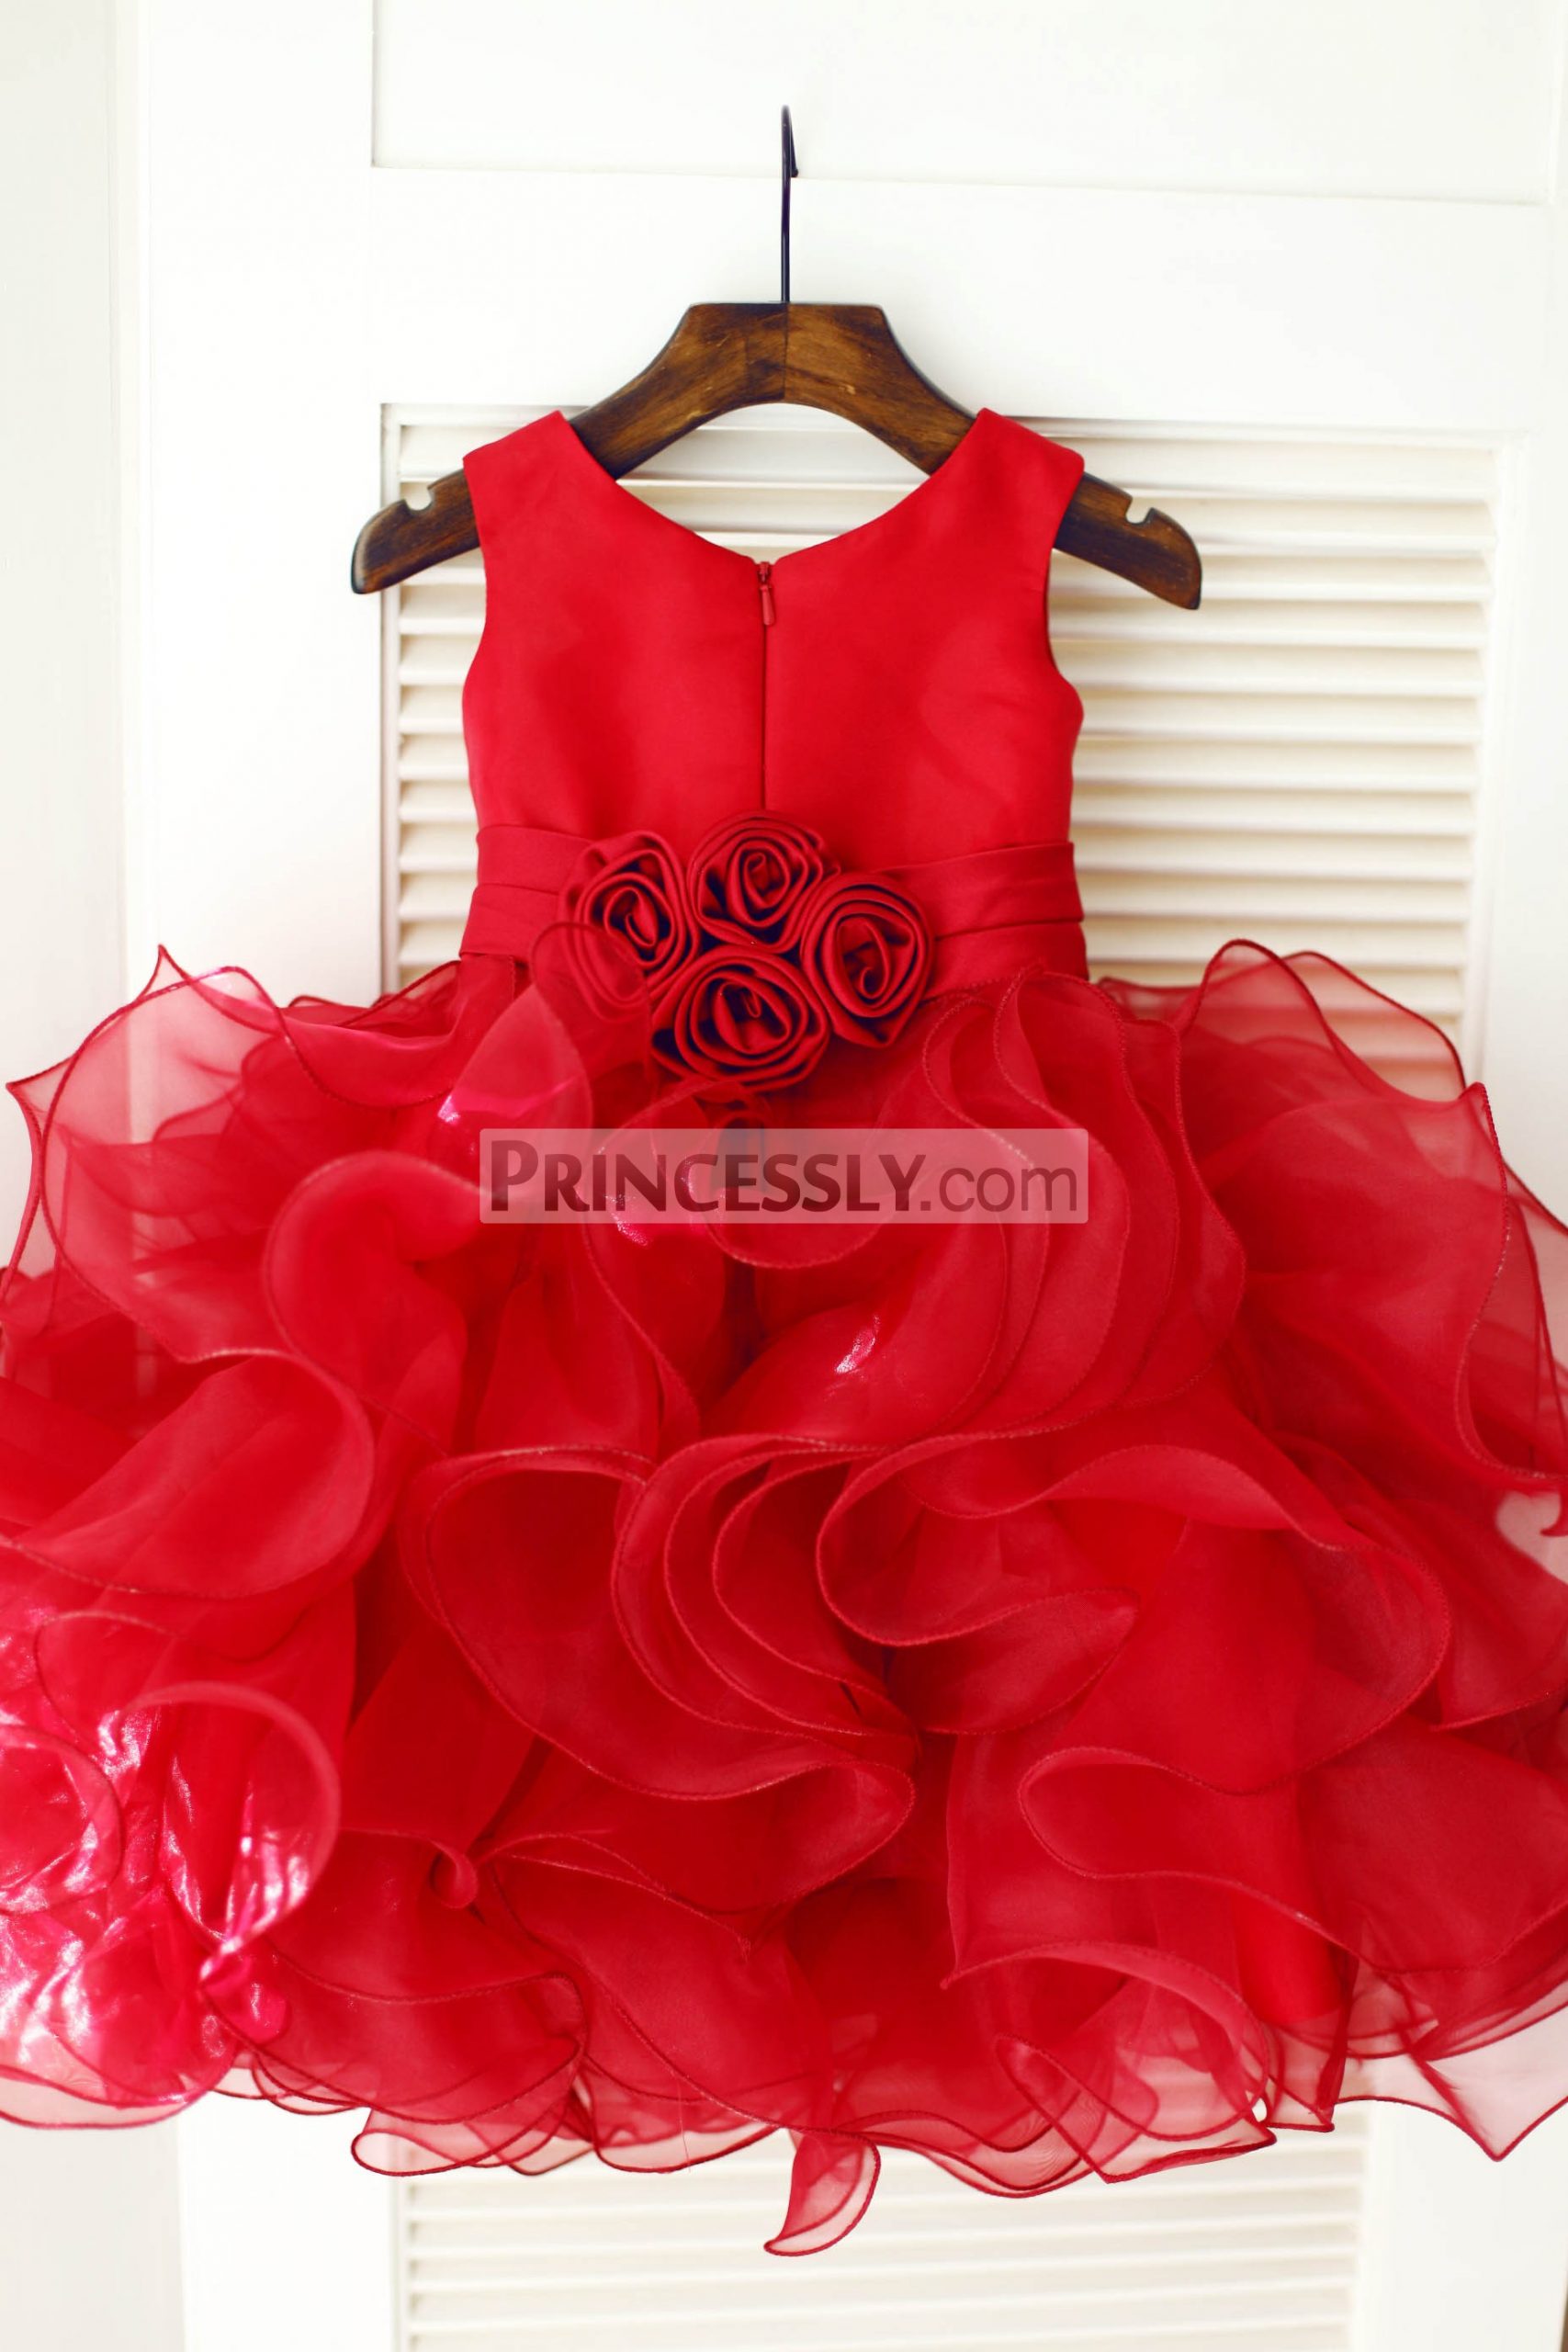 Red Satin Ruffles Organza Ball Gown Flower Girl Dress – Avivaly